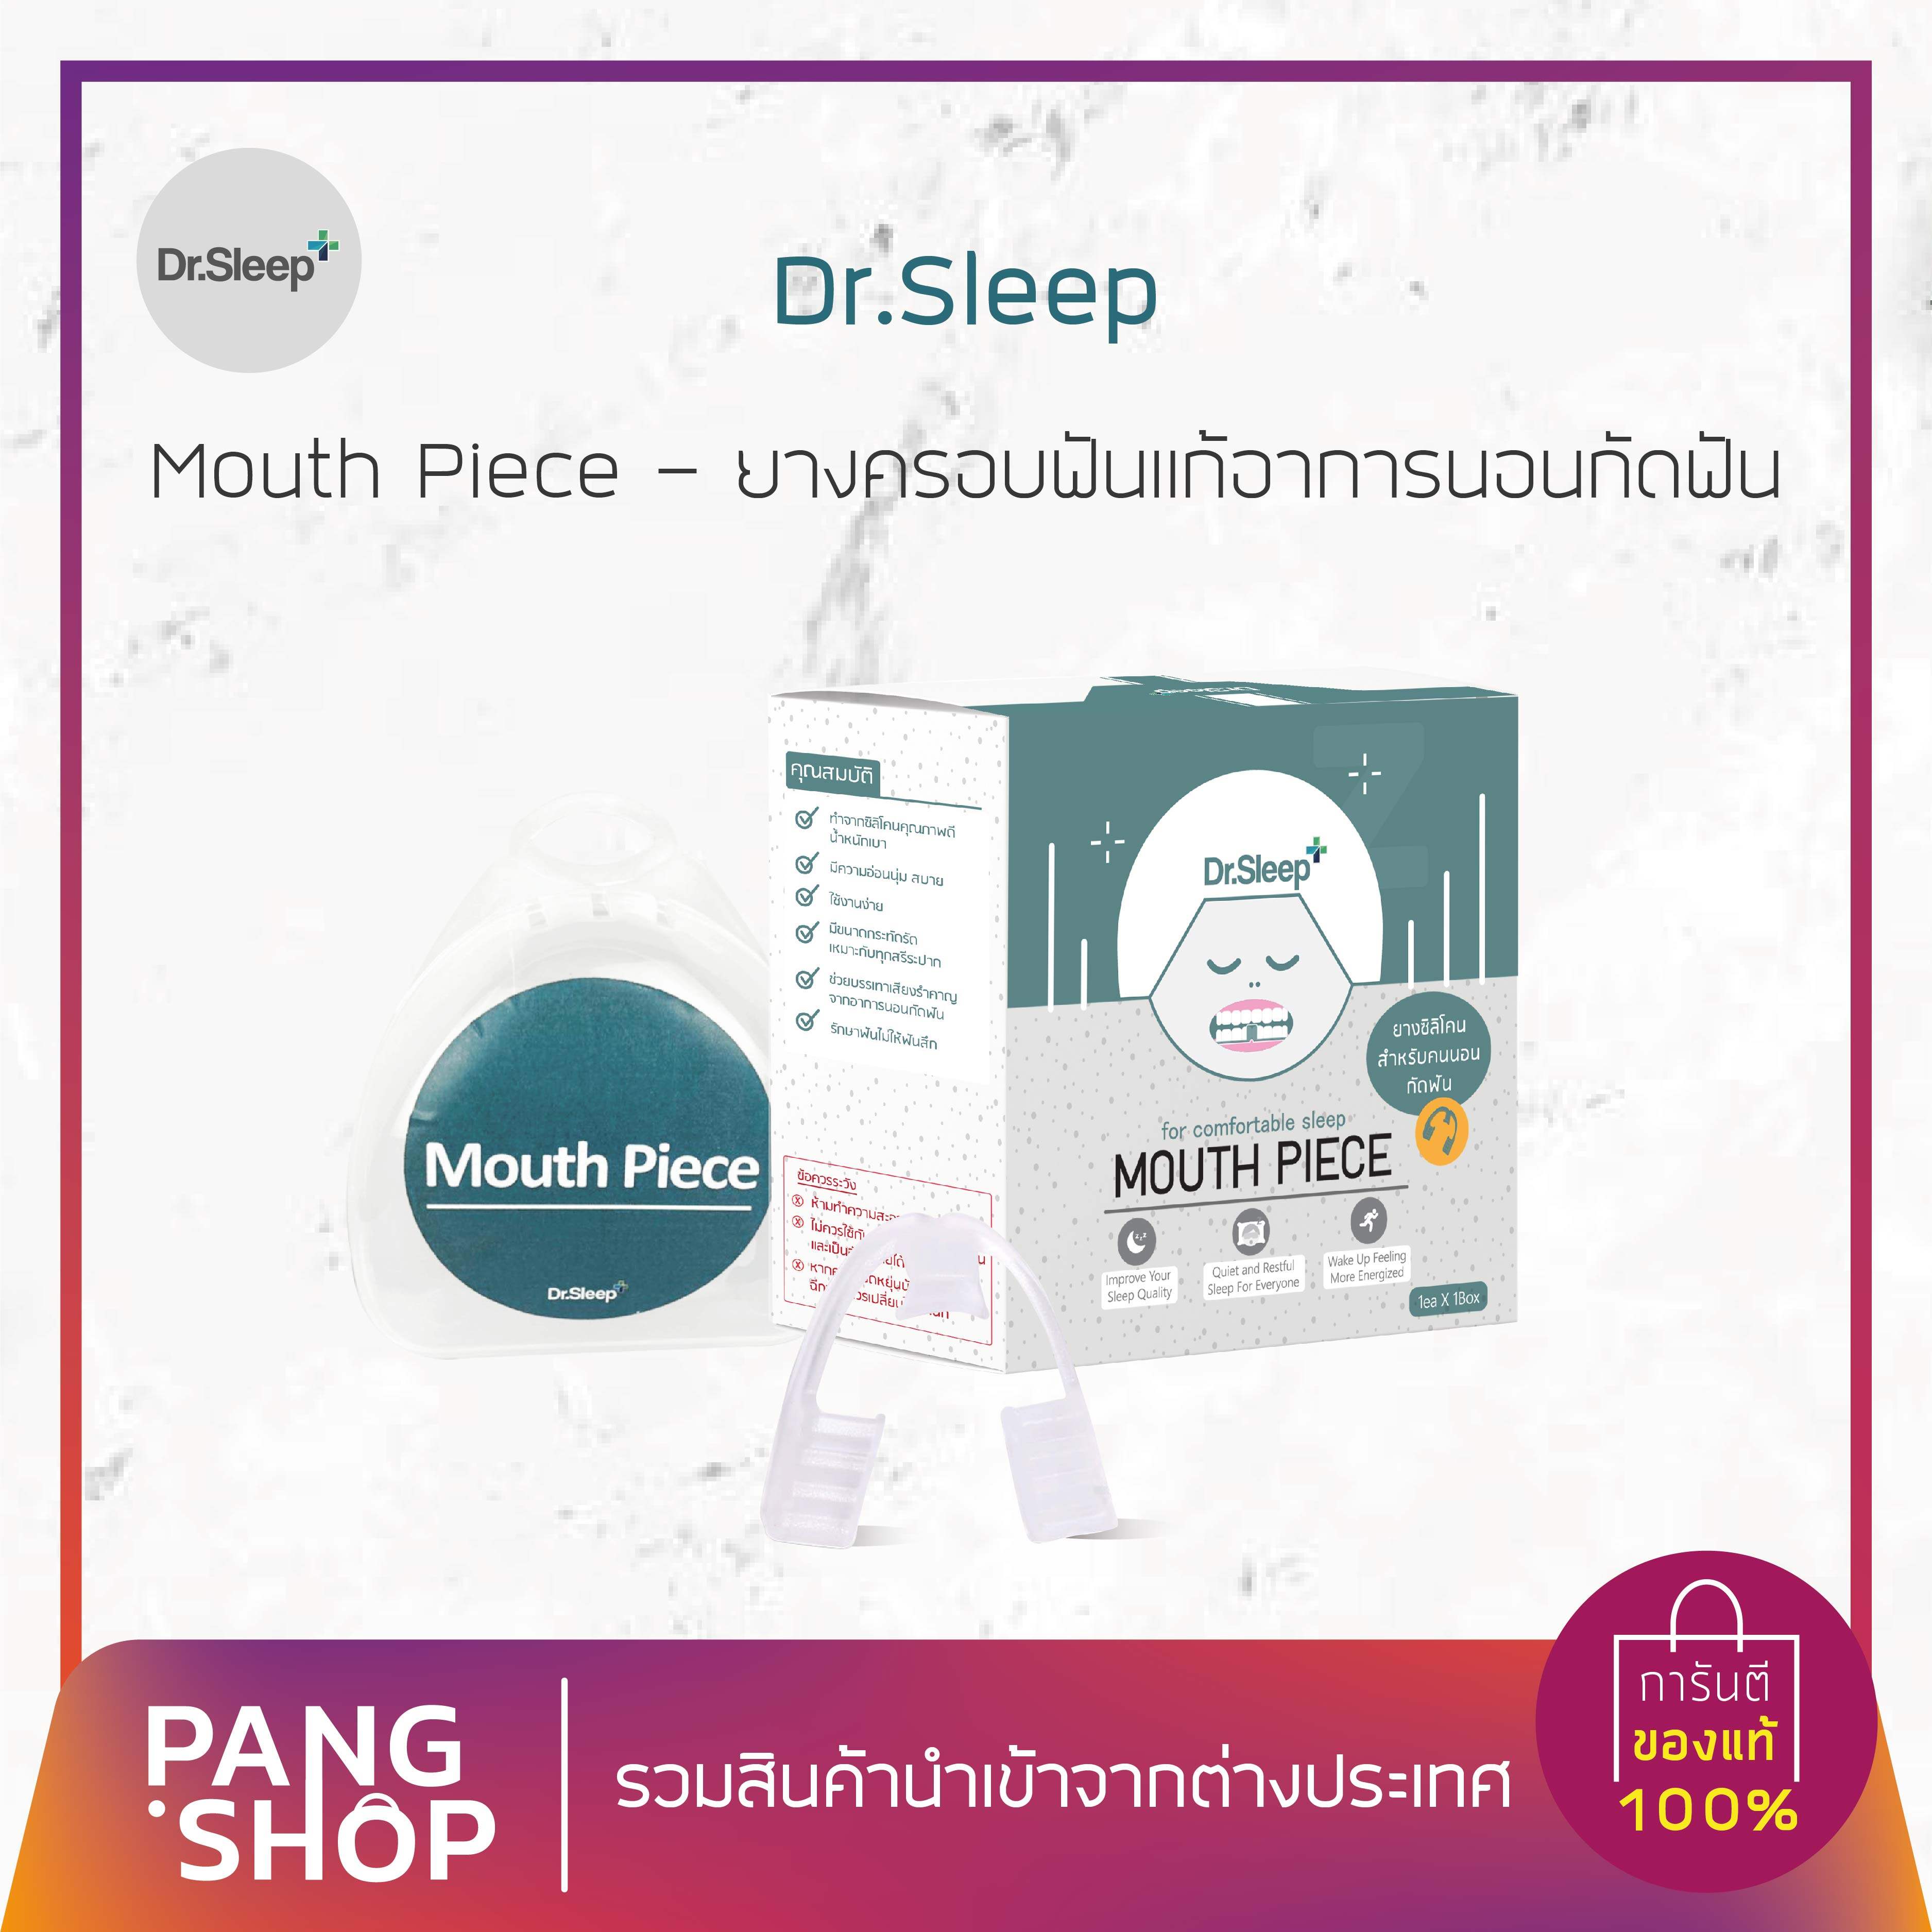 ยางครอบฟันแก้อาการนอนกัดฟัน Mouth Piece Dr.Sleep ✨ #dr.Sleep  #กัดฟัน  #ยางครอบฟันแก้อาการนอนกัดฟัน   #Mouth Piece